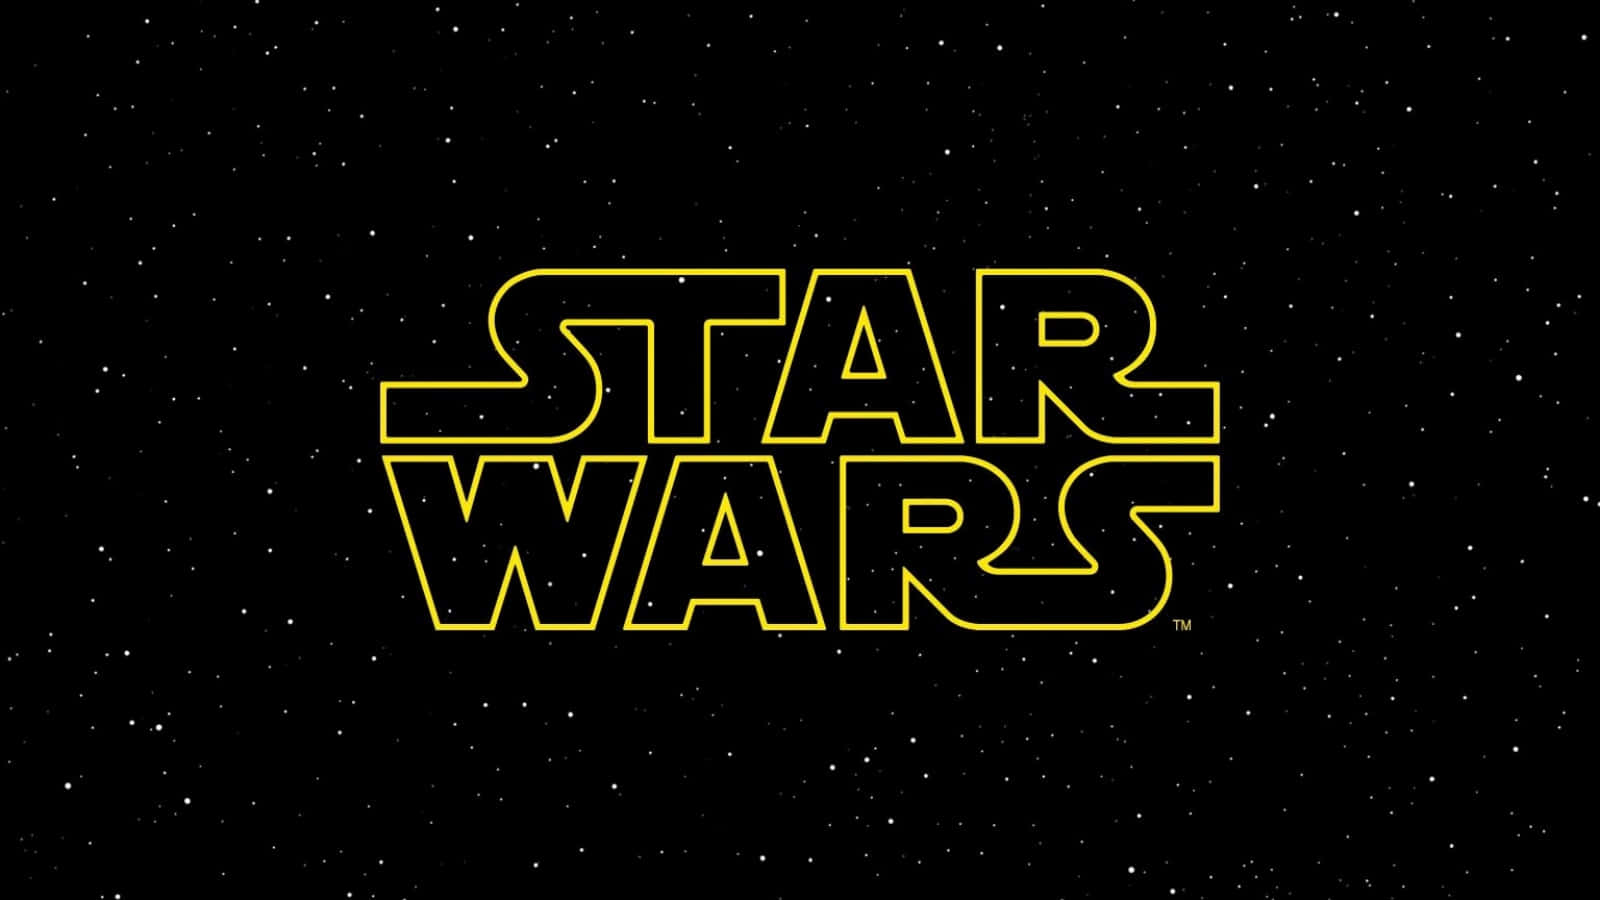 Logode Star Wars En Imagen De Cielo Estrellado.